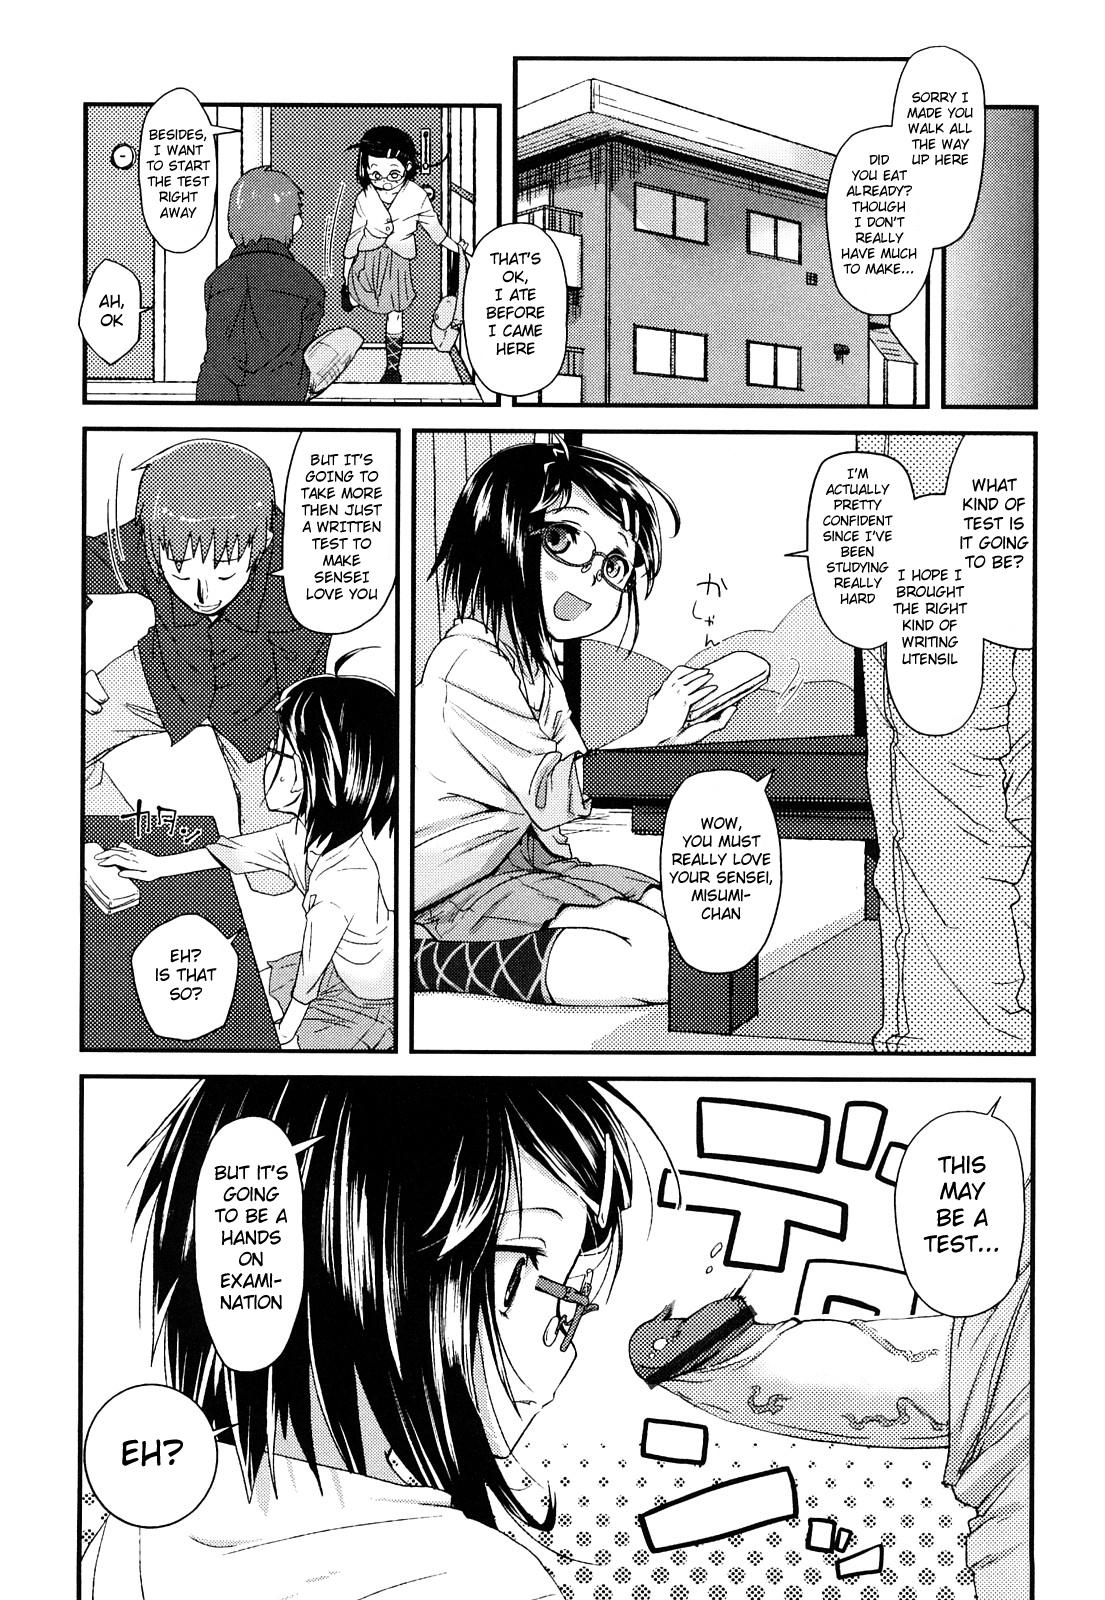 Misumi's Adult Education 3